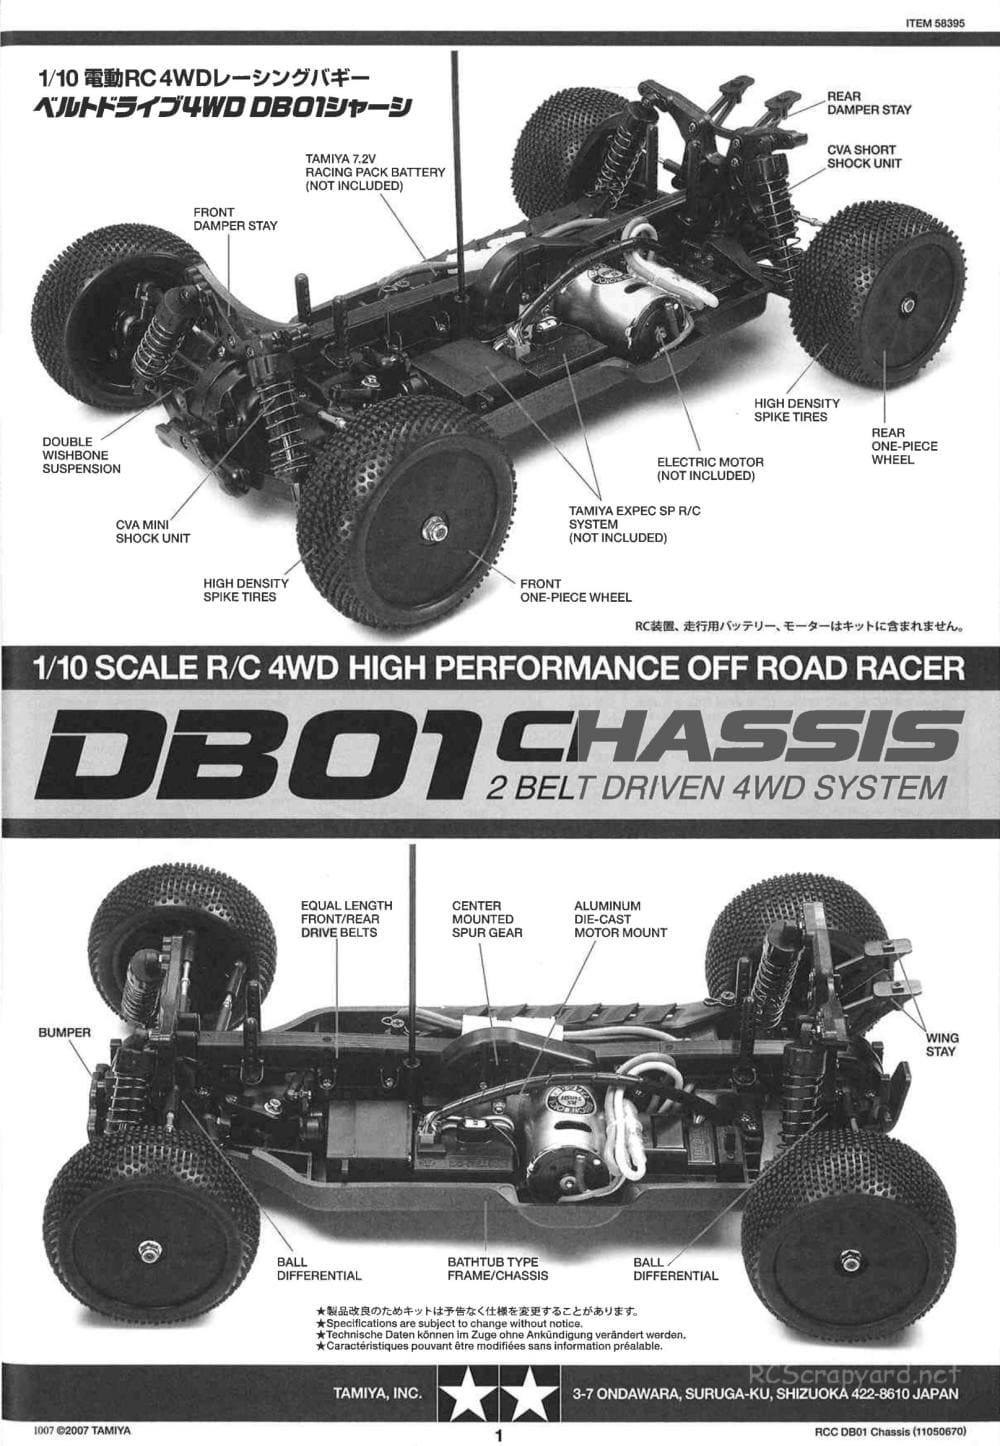 Tamiya - DB-01 Chassis - Manual - Page 1